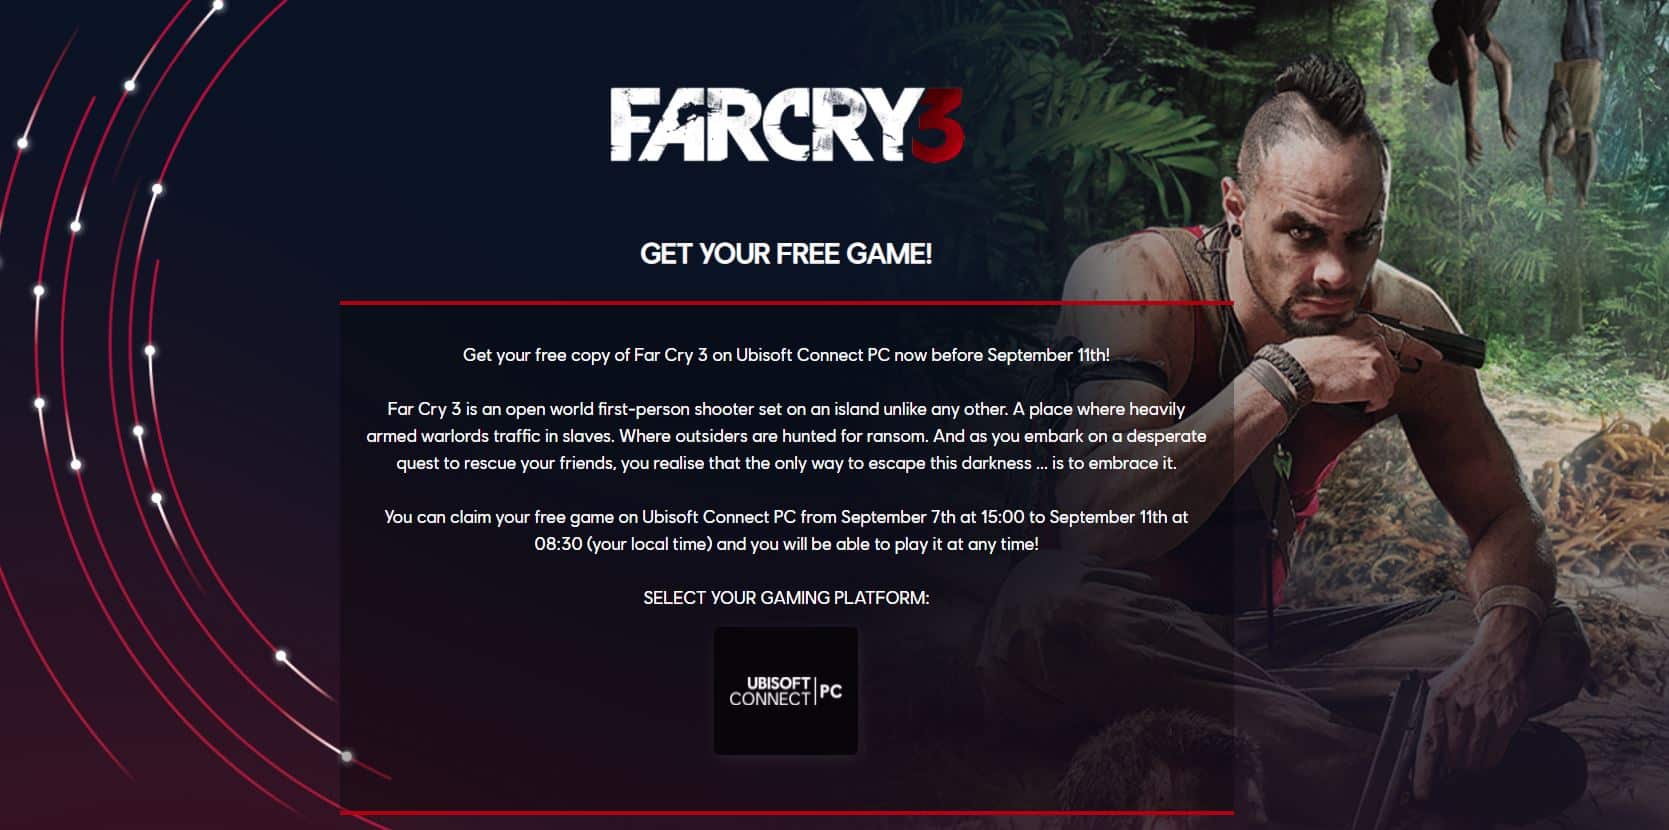 Is Far Cry 3 still free?